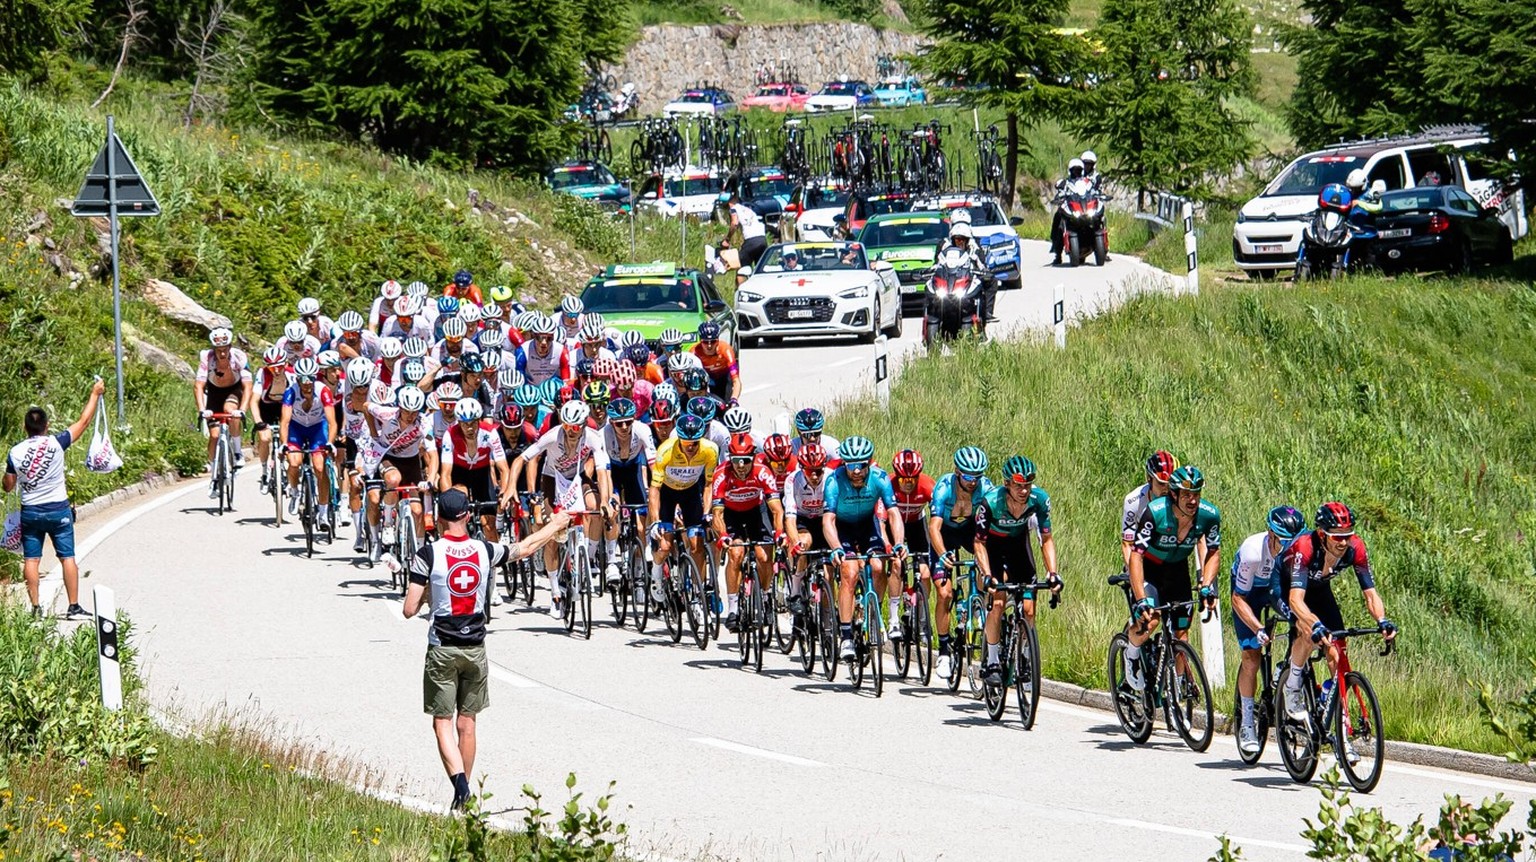 Peloton: Tour de Suisse - Men 2022 - 6. Stage Peloton Querformat - quer - horizontal - Landscape - Event/Veranstaltung: Tour de Suisse - Elite Men - 6. Stage - Category/Kategorie: Cycling - Road cycli ...